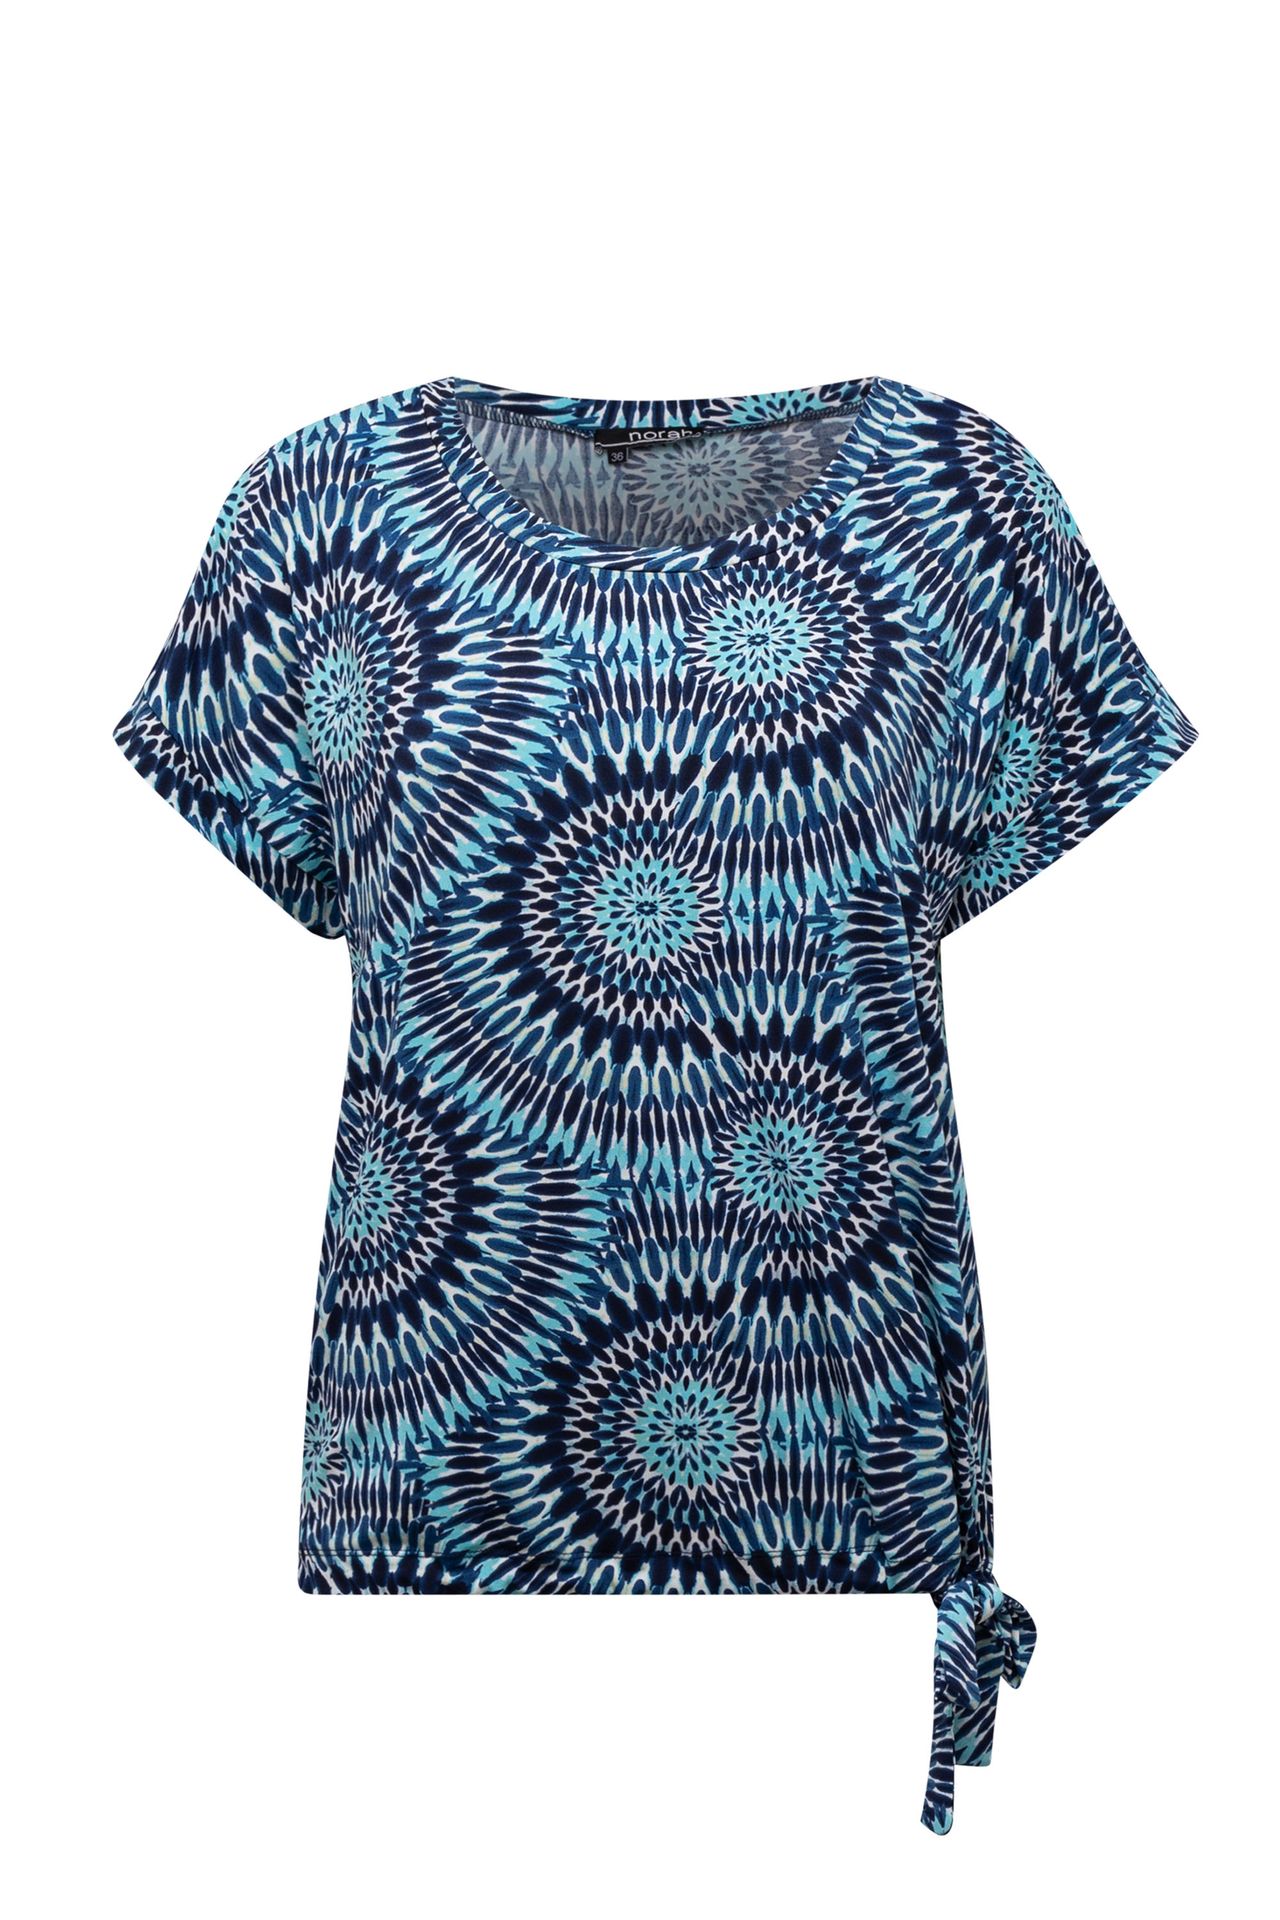 Norah Meerkleurig shirt co-ord blue multicolor 213820-420